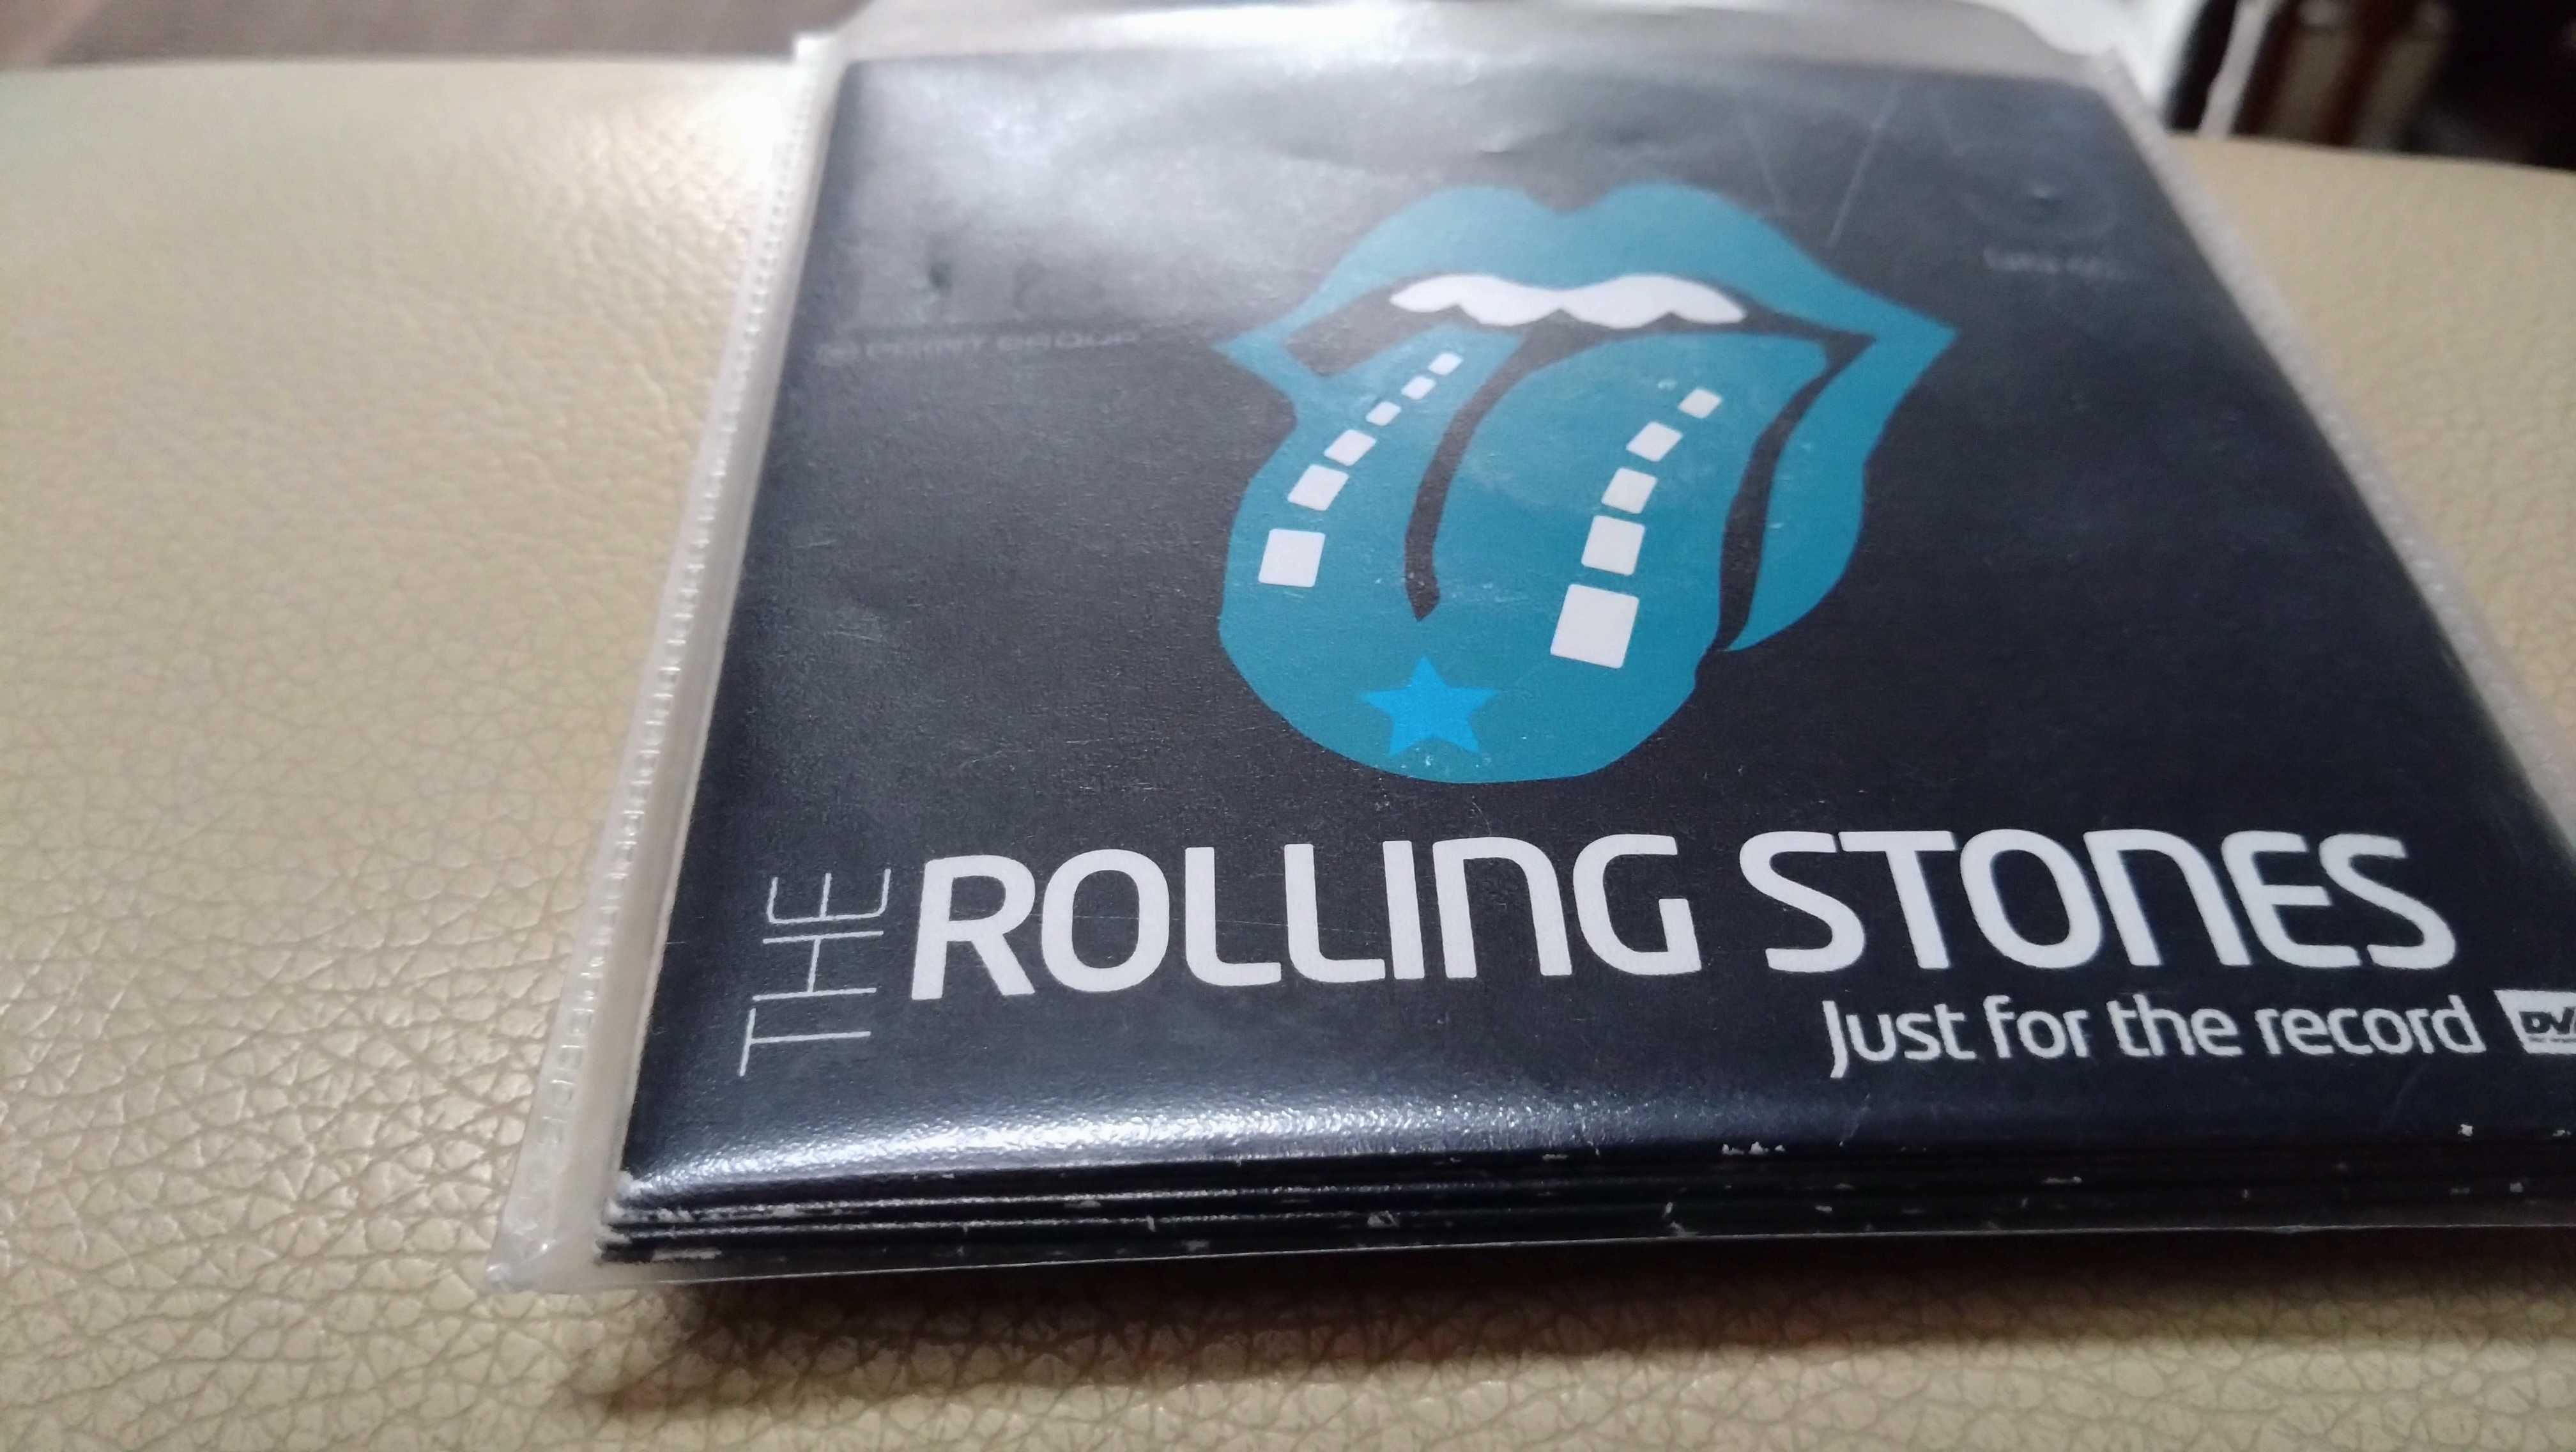 płyty flexi DVHD The Rolling Stones, 5 płyt, Mick Jagger